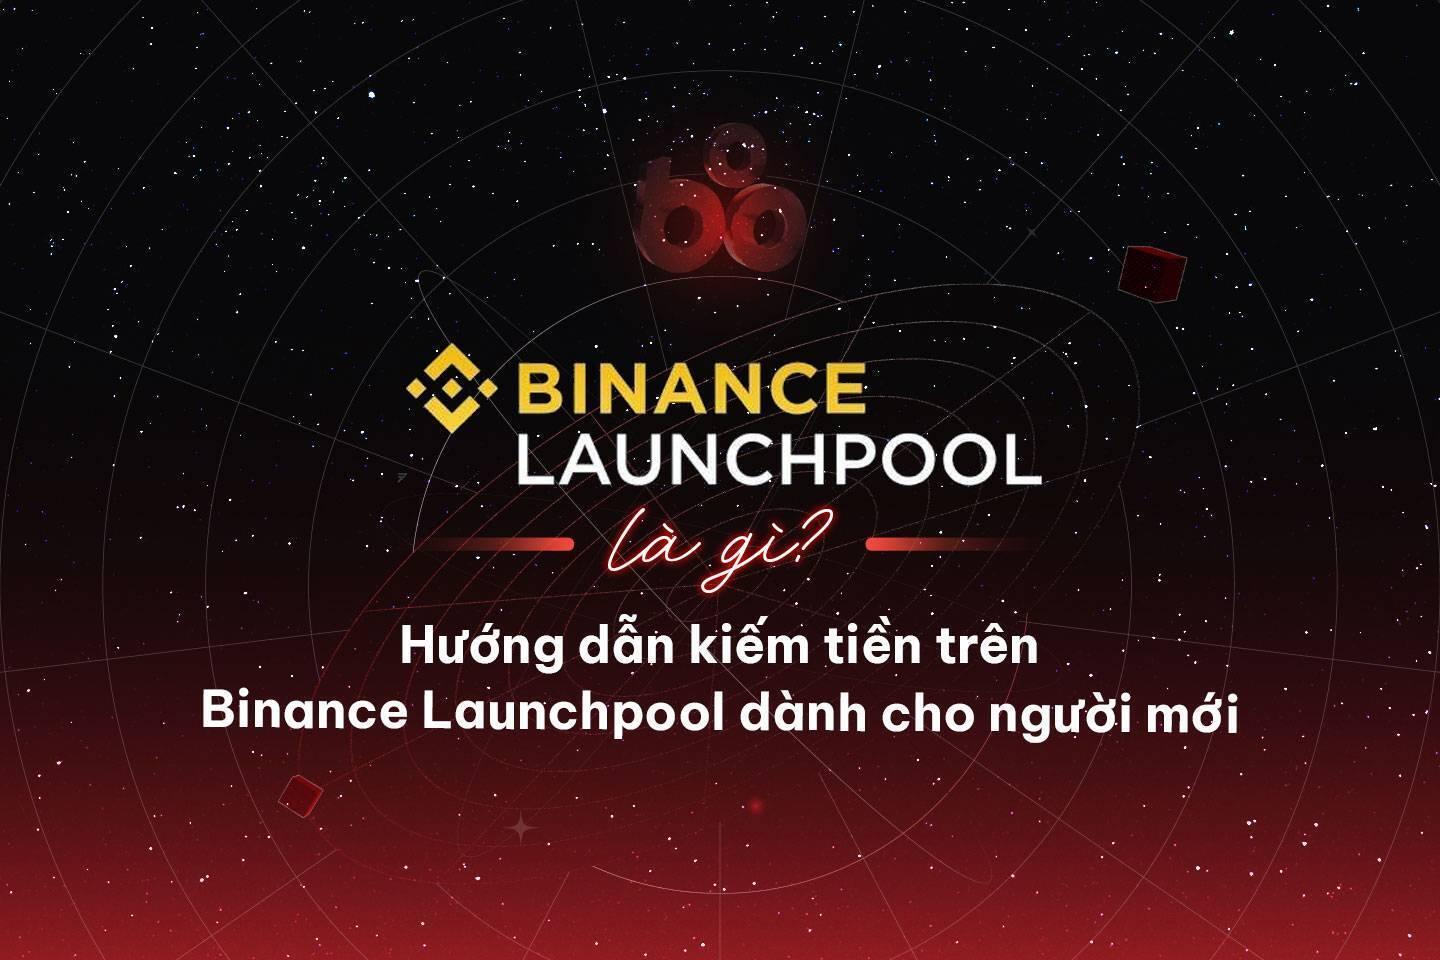 binance-launchpool-la-gi-huong-dan-kiem-tien-tren-binance-launchpool-danh-cho-nguoi-moi